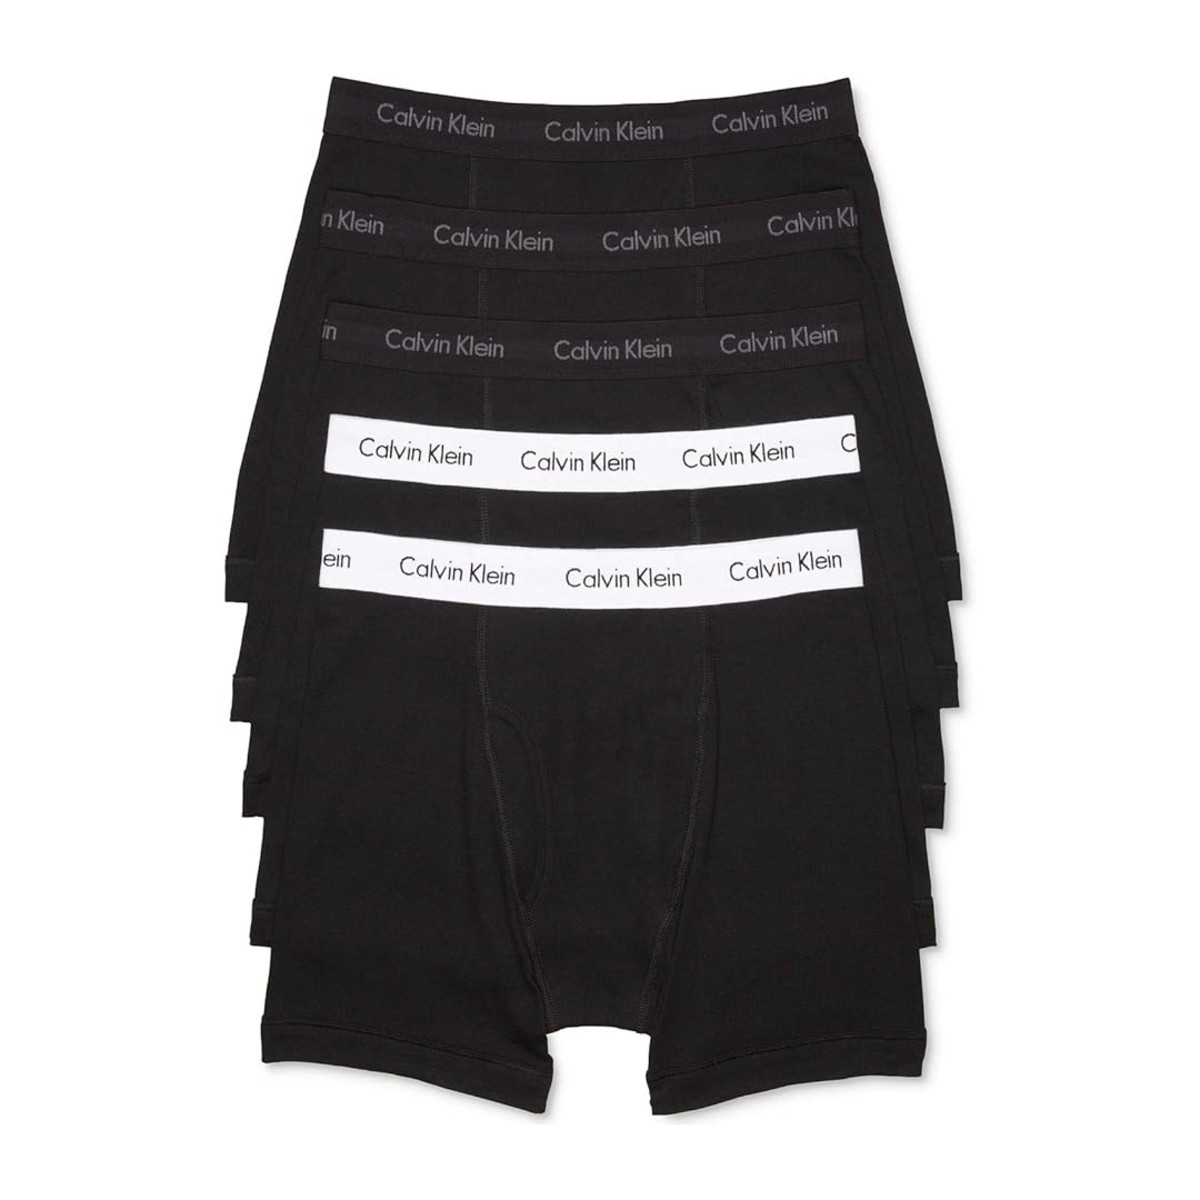 Jeremy Allen White's Calvin Klein Underwear Campaign Won the